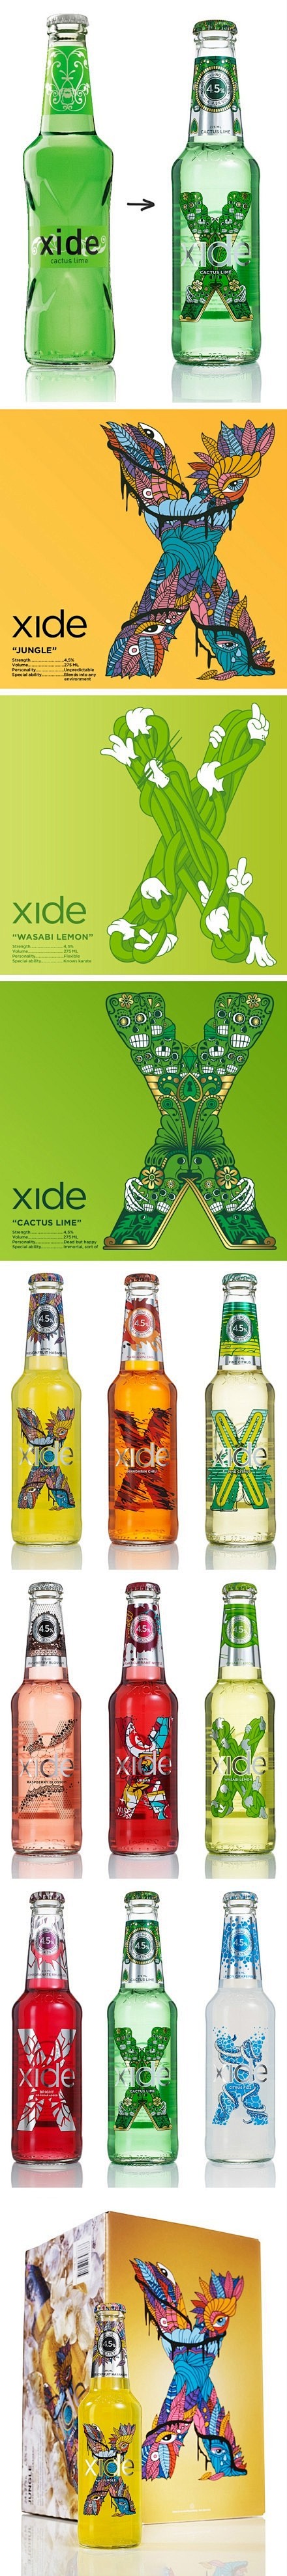 Carlsberg Xide酒品牌包装视...